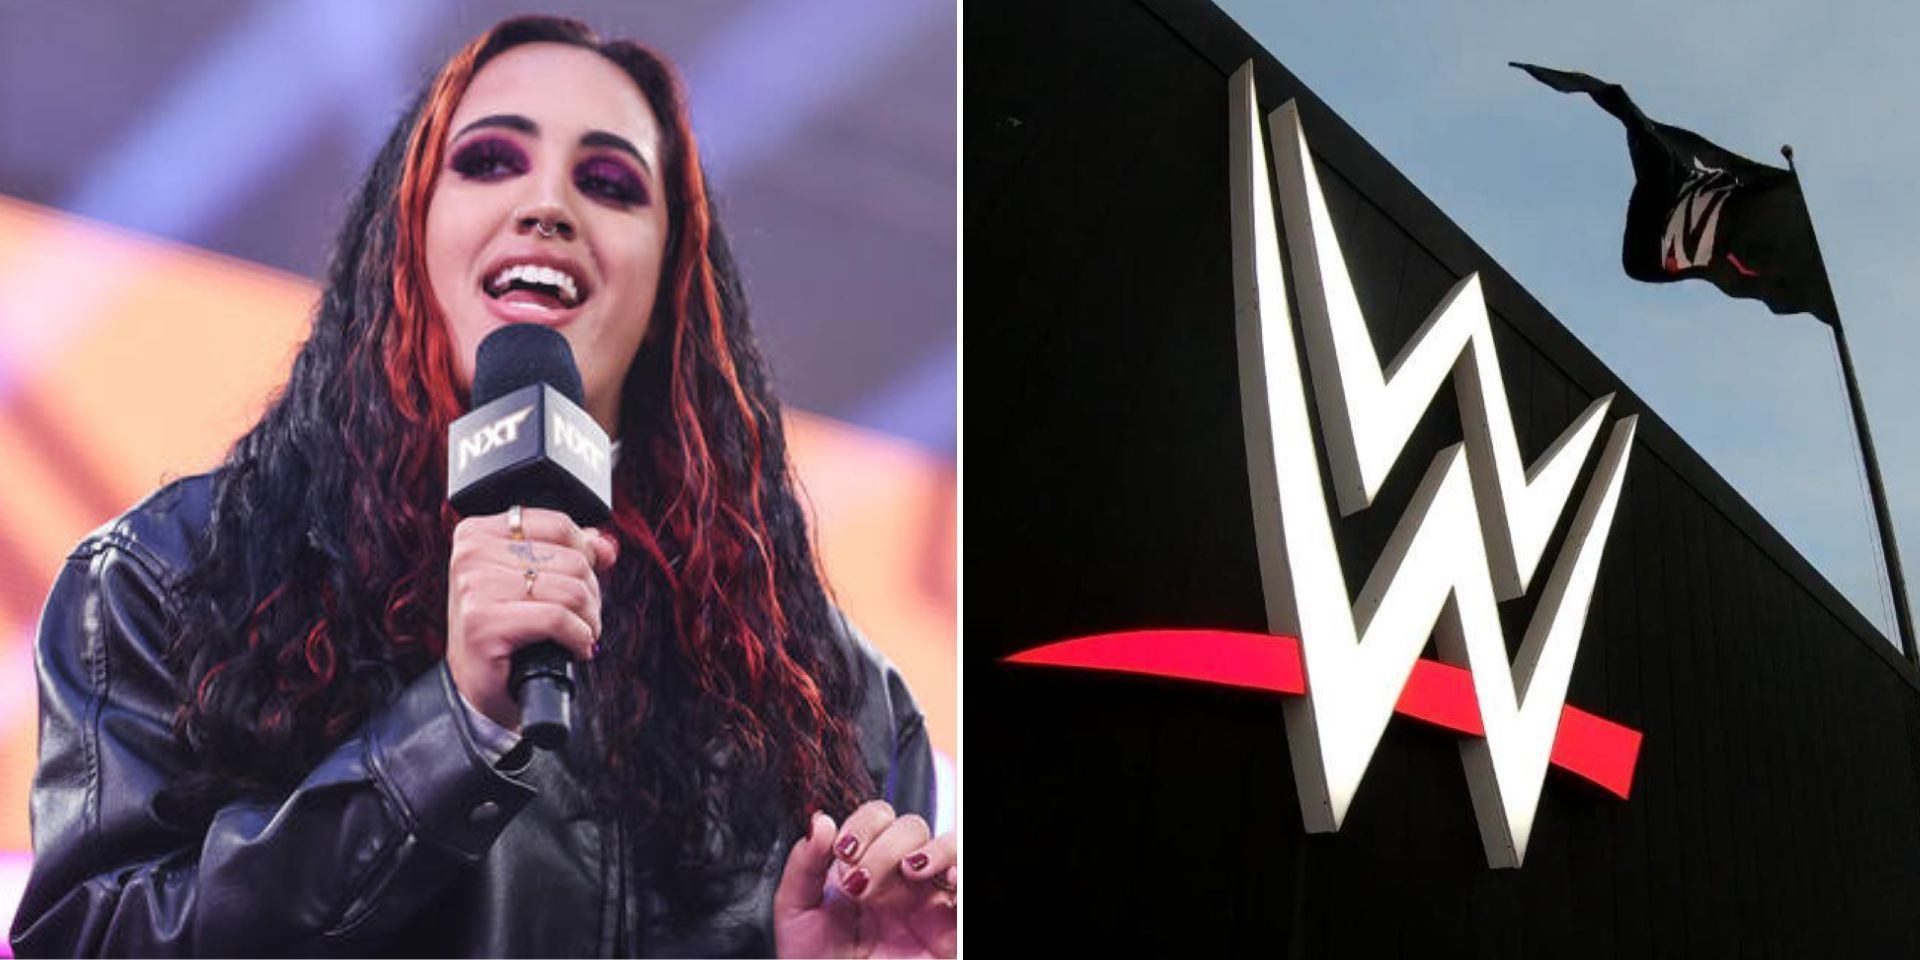 Ava made an announcement regarding a WWE star